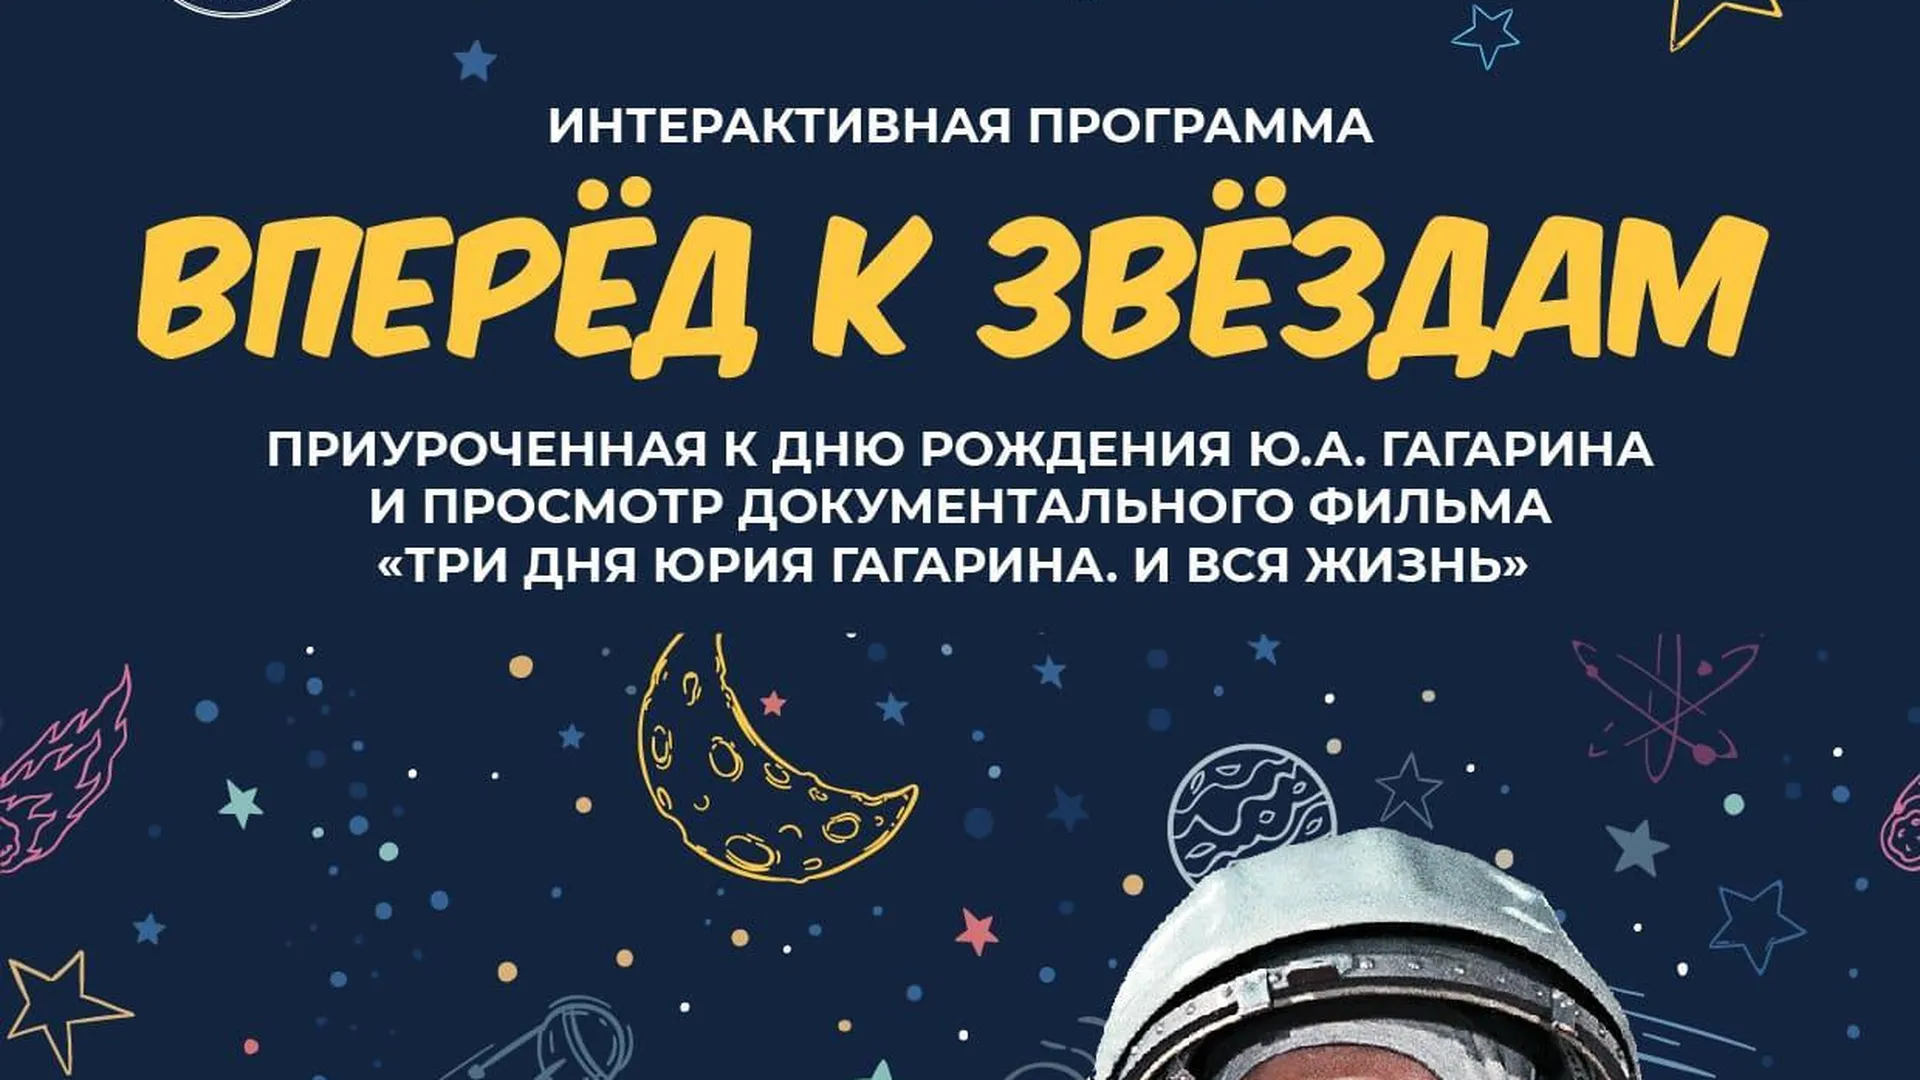 Школьников Коломны с 9 марта приглашают на интерактивную программу «Вперед к звездам!»